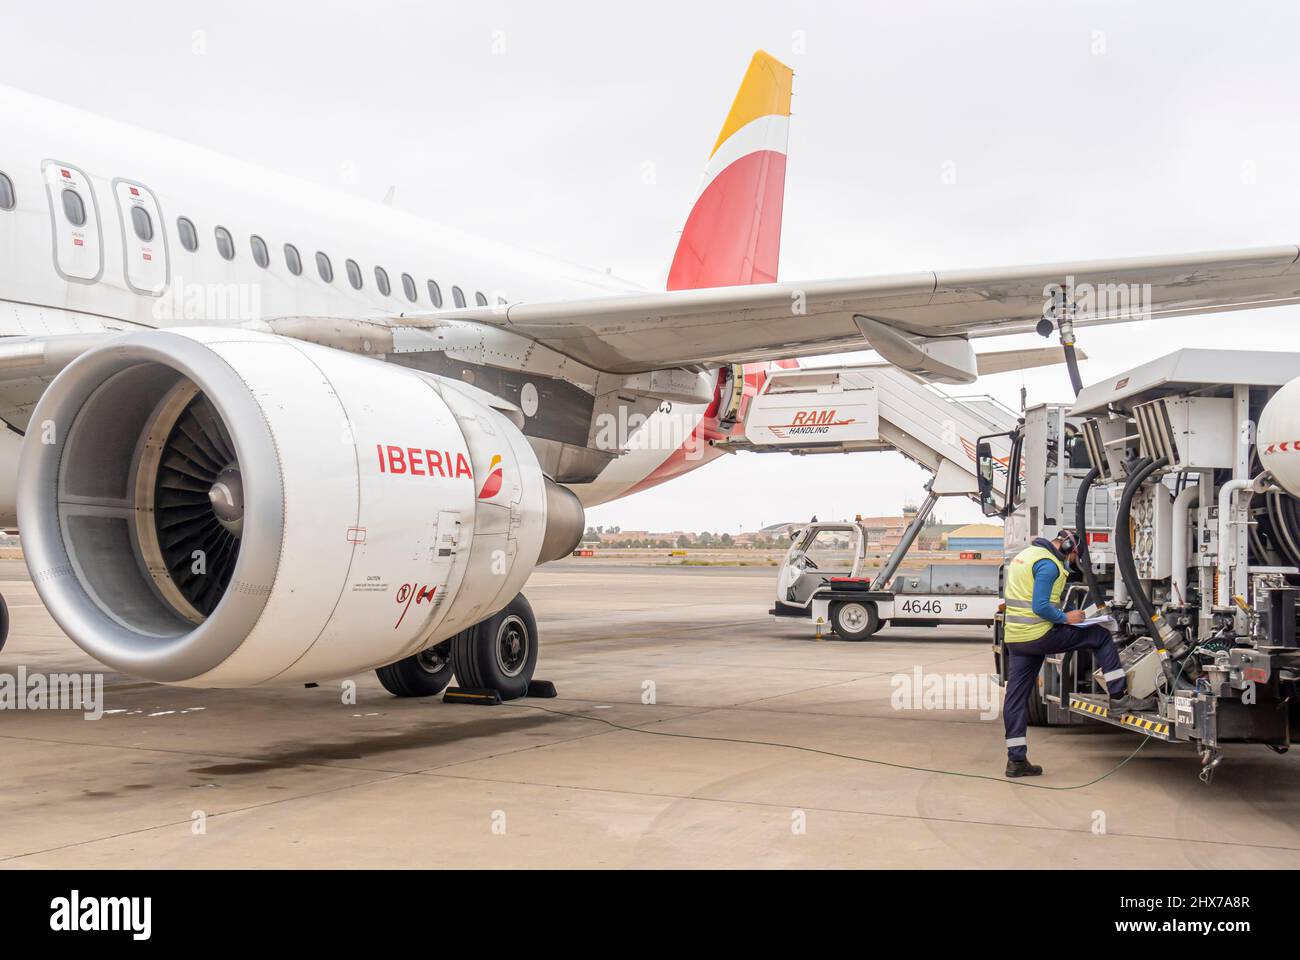 Un employé ravitailleur en carburant des compagnies aériennes Iberia Airbus A320 avion à double moteur à l'aéroport de Marrakech Menara, Maroc, Afrique du Nord Banque D'Images